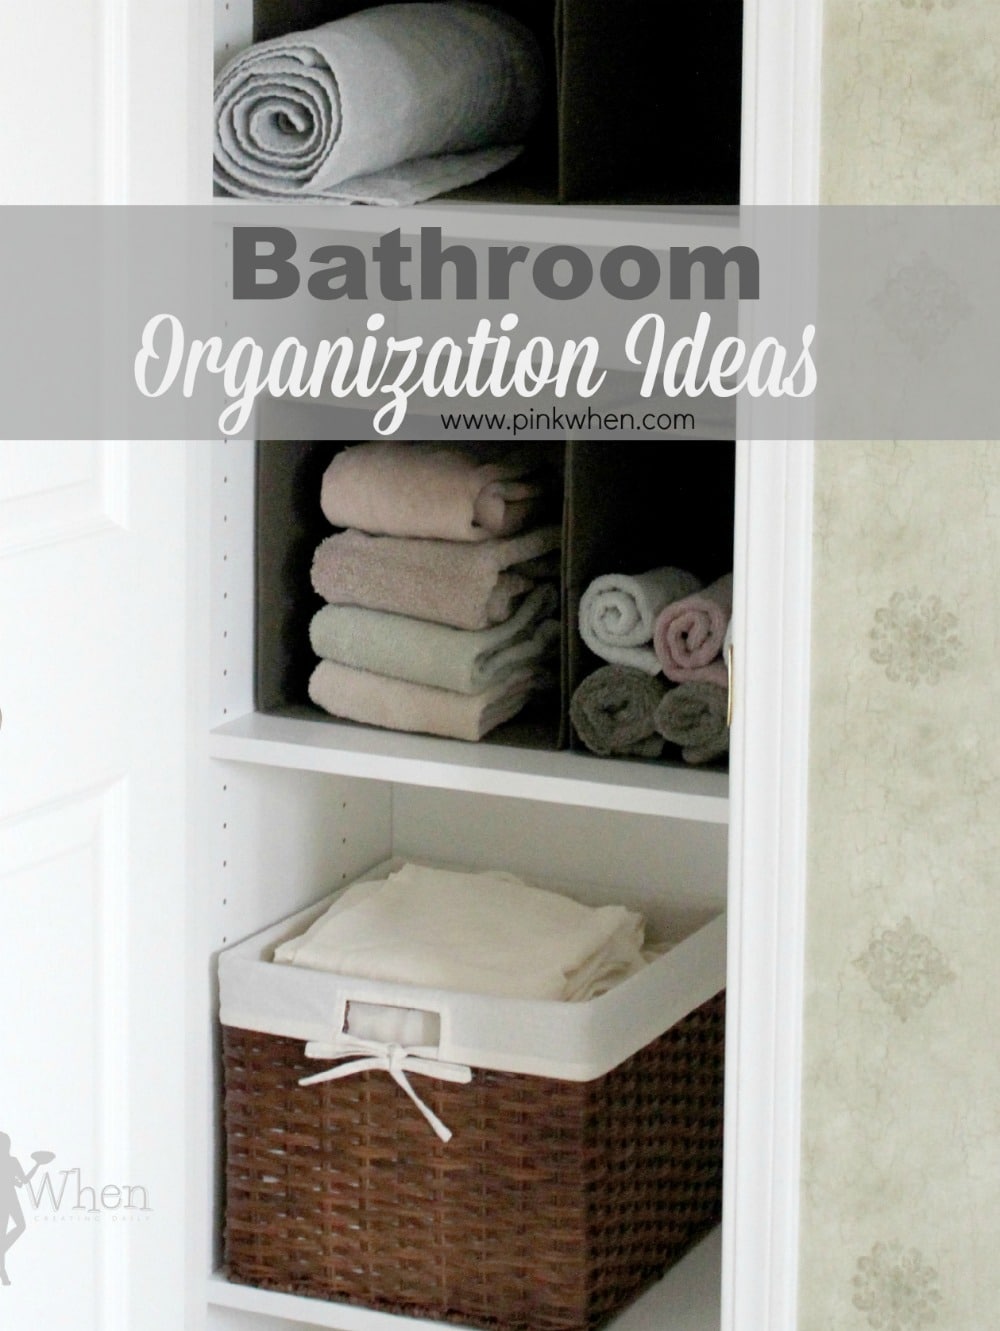 Bathroom Organization ideas www.pinkwhen.com @pinkwhen